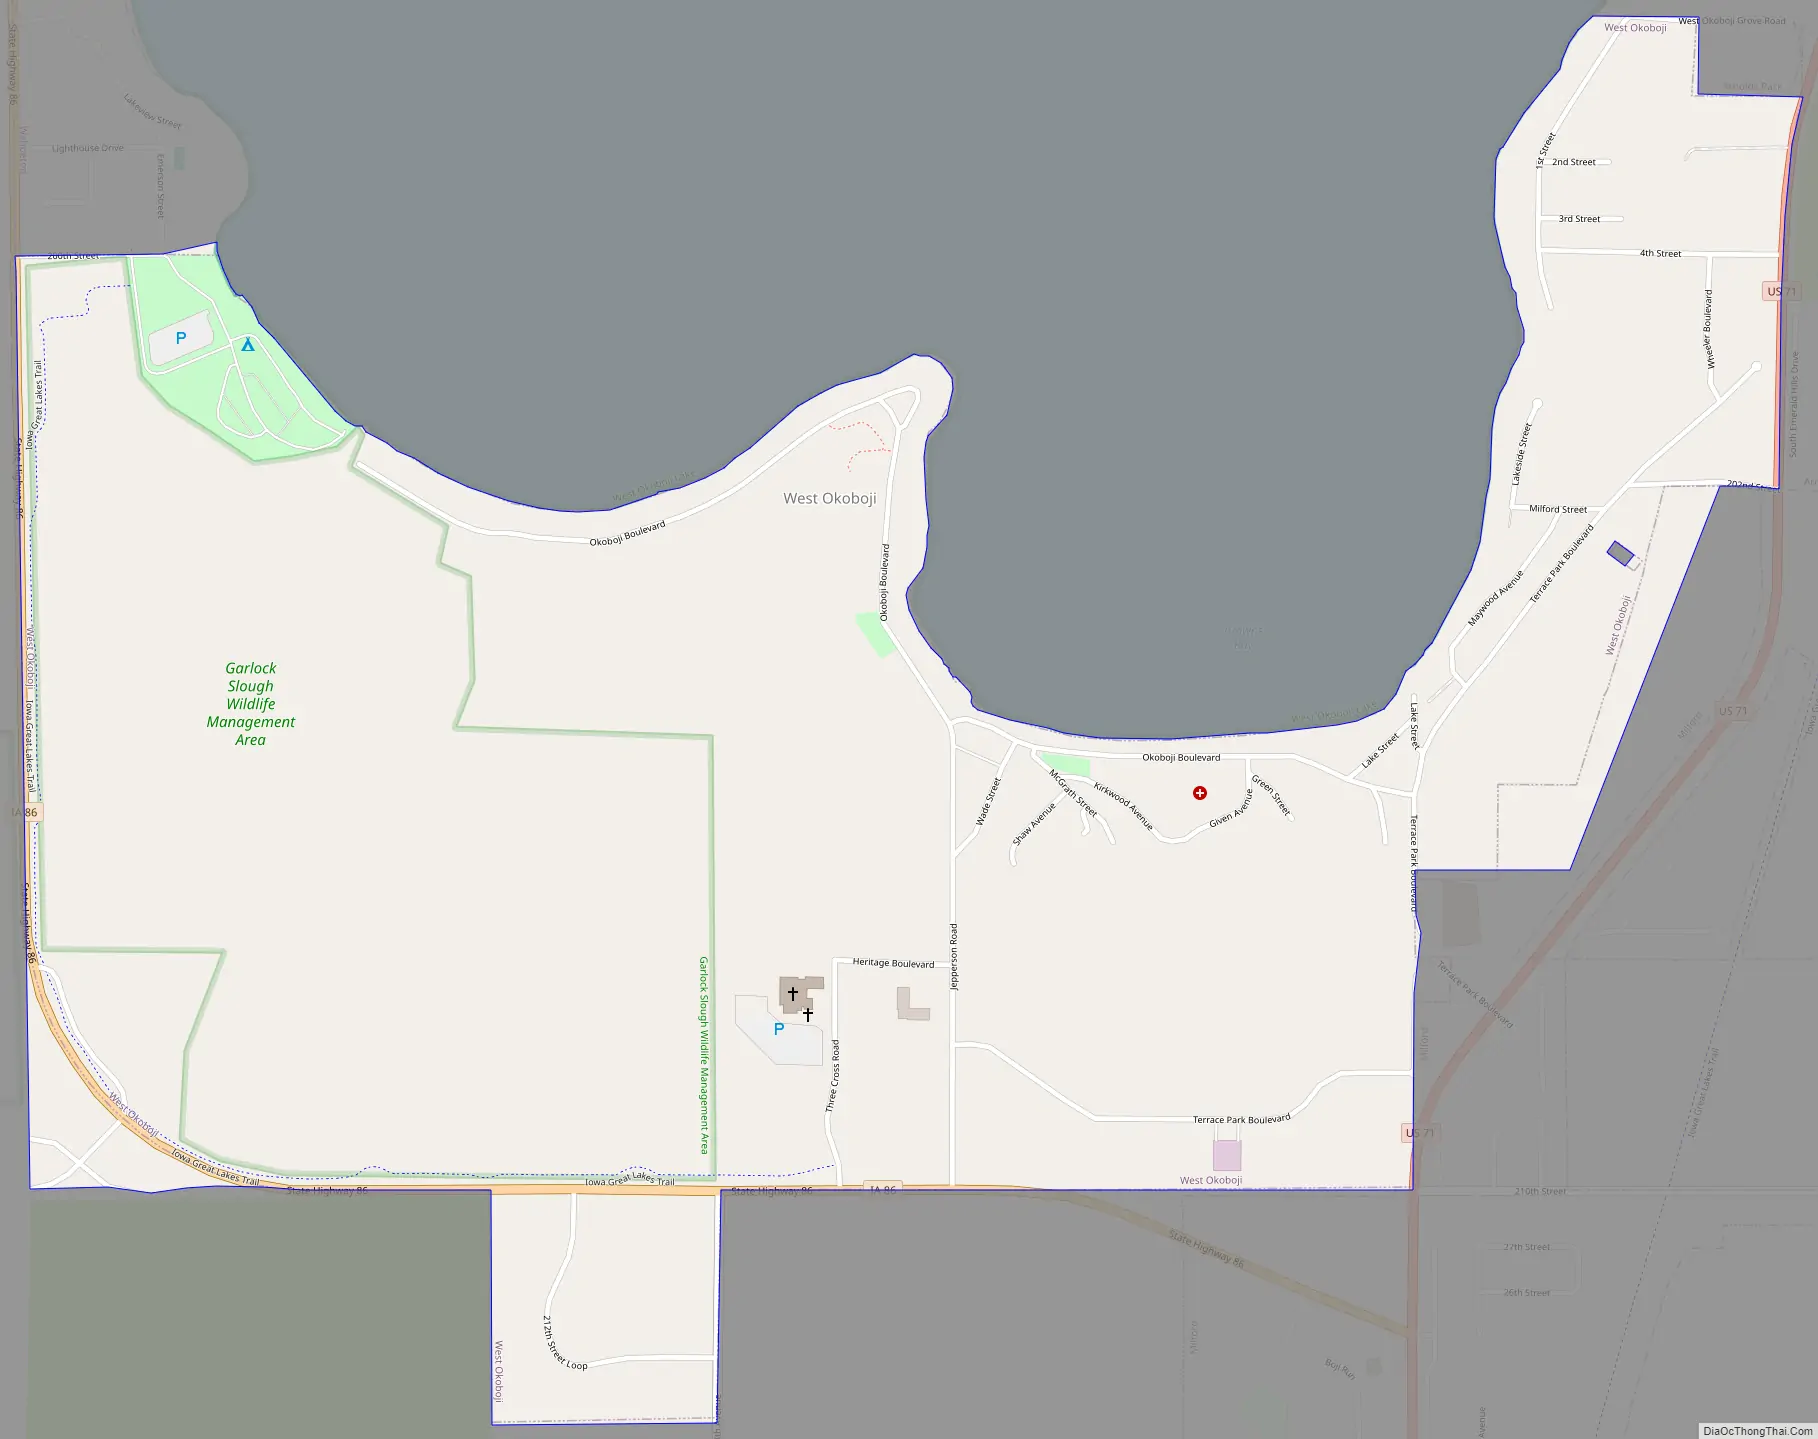 Map of West Okoboji city